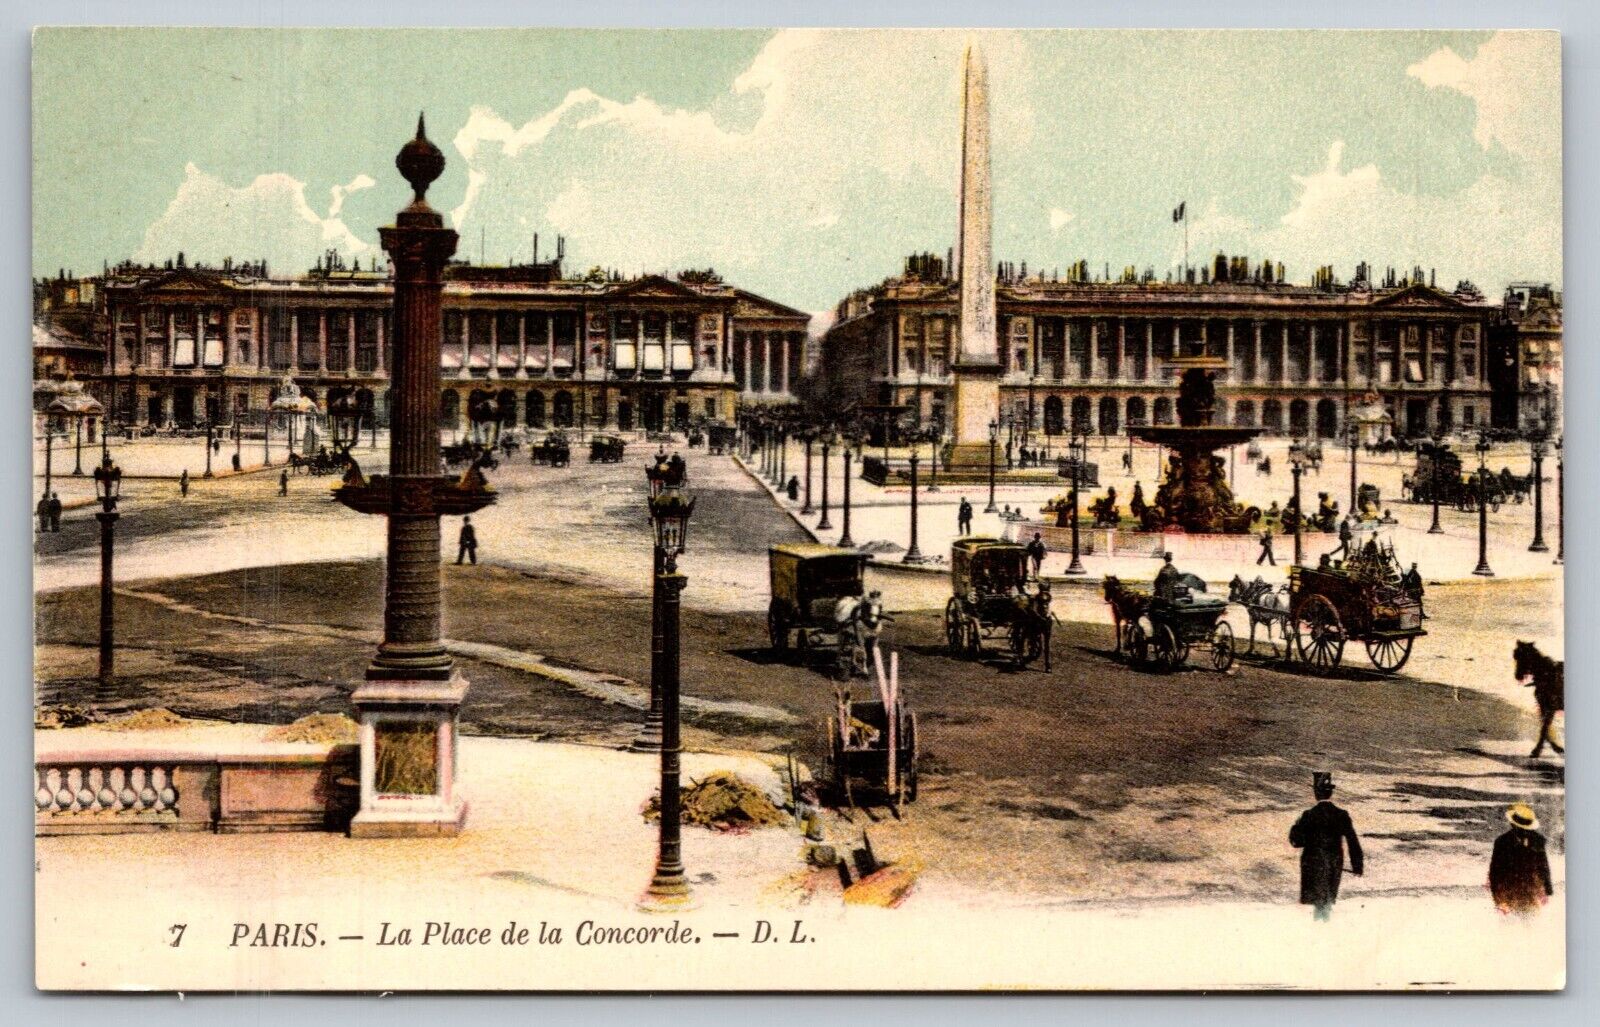 Vtg 1910s La Place de la Concorde Public Square Paris France Postcard